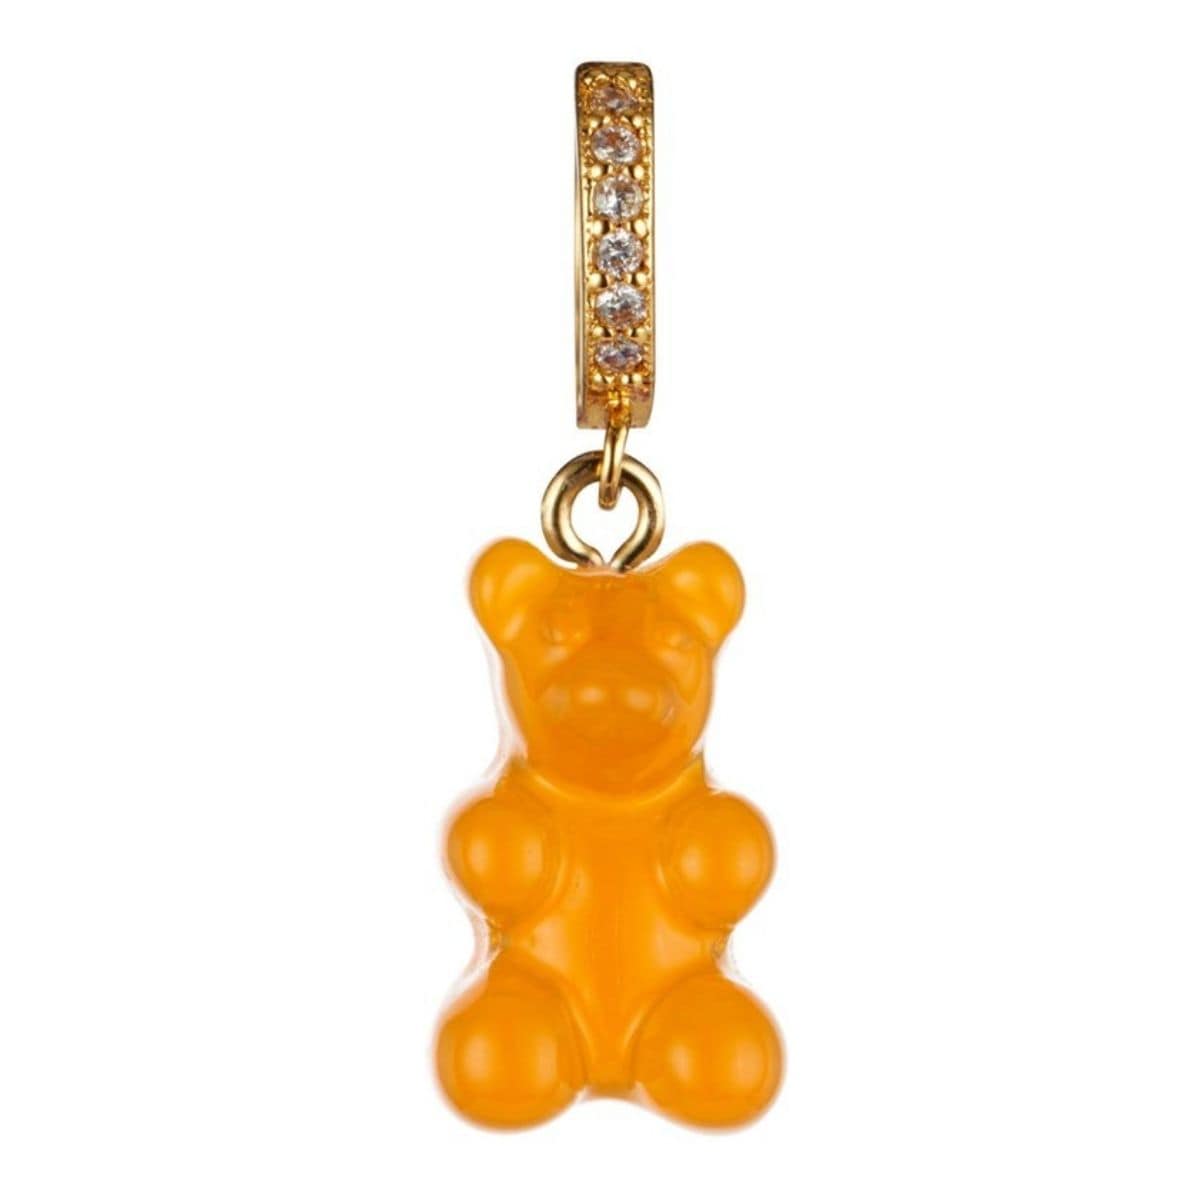 orange gummy bear pendant charm - Gummy Bear Bling